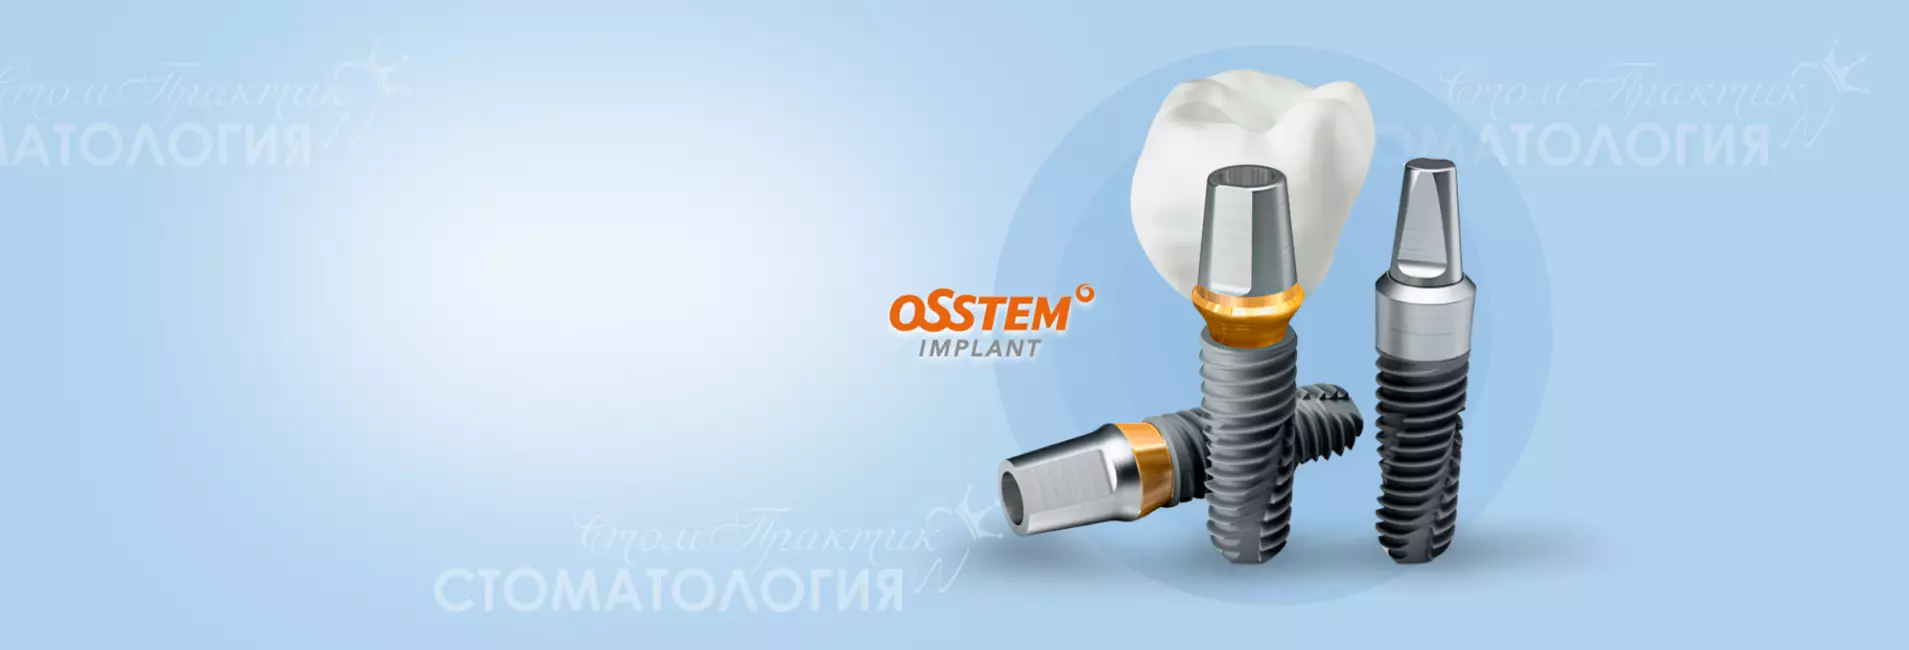 OsstemИмплантация жевательных зубов (Коронка+Имплант) «под ключ»